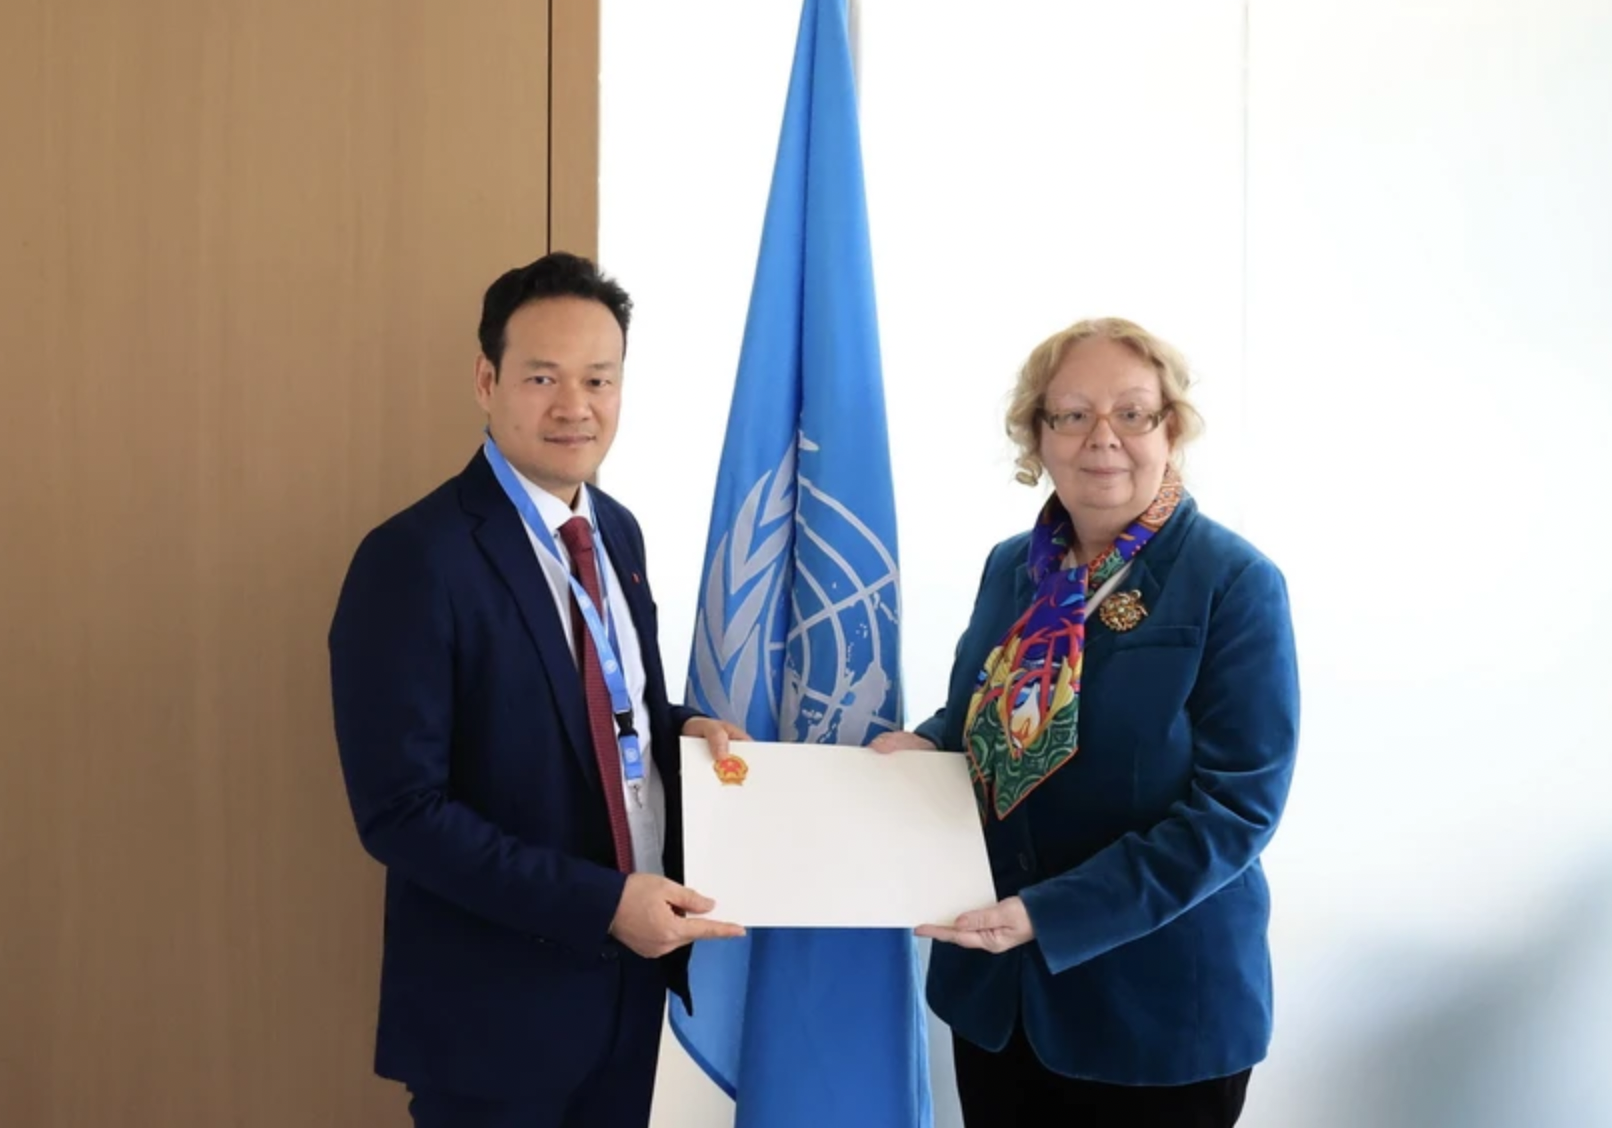 梅潘勇大使向联合国日内瓦办事处(UN Geneva)总干事塔蒂亚娜·瓦洛瓦亚呈递委任书。